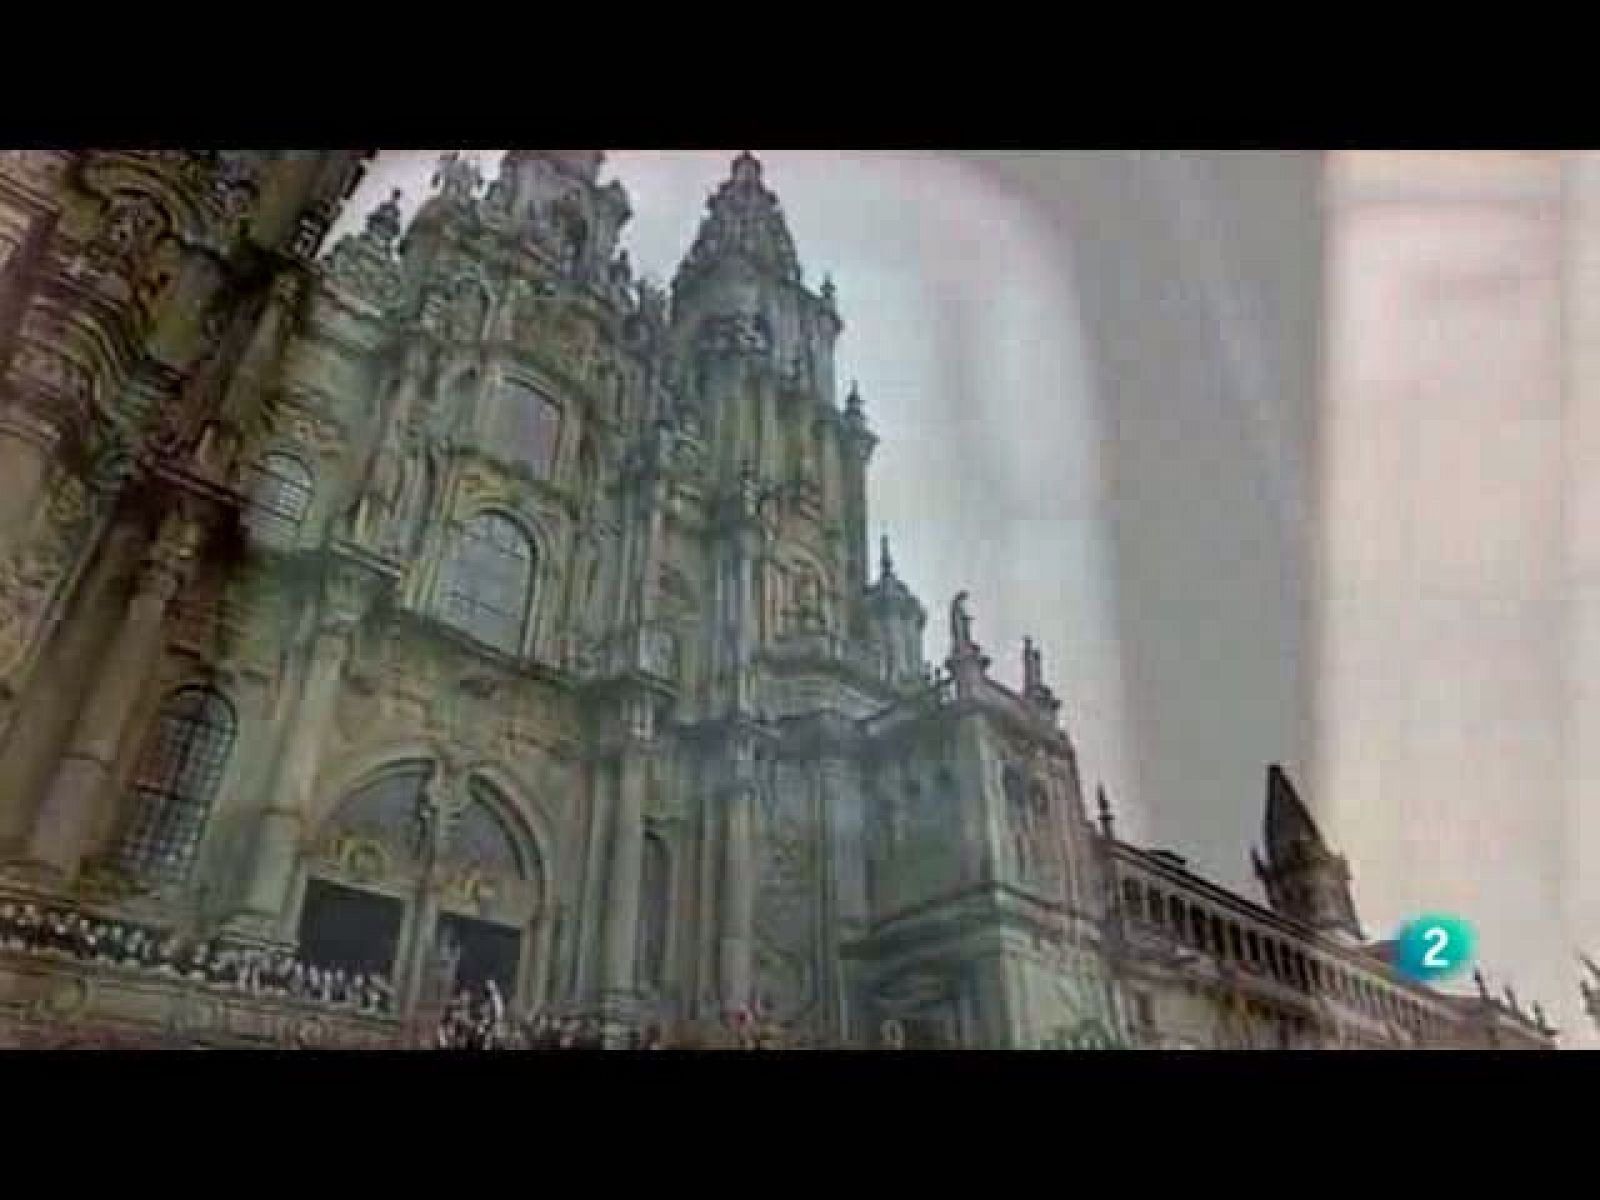 El día del señor: Desde la Catedral de Santiago de Compostela misa oficiada por S.S. el Papa Benedicto XVI (06/11/10)